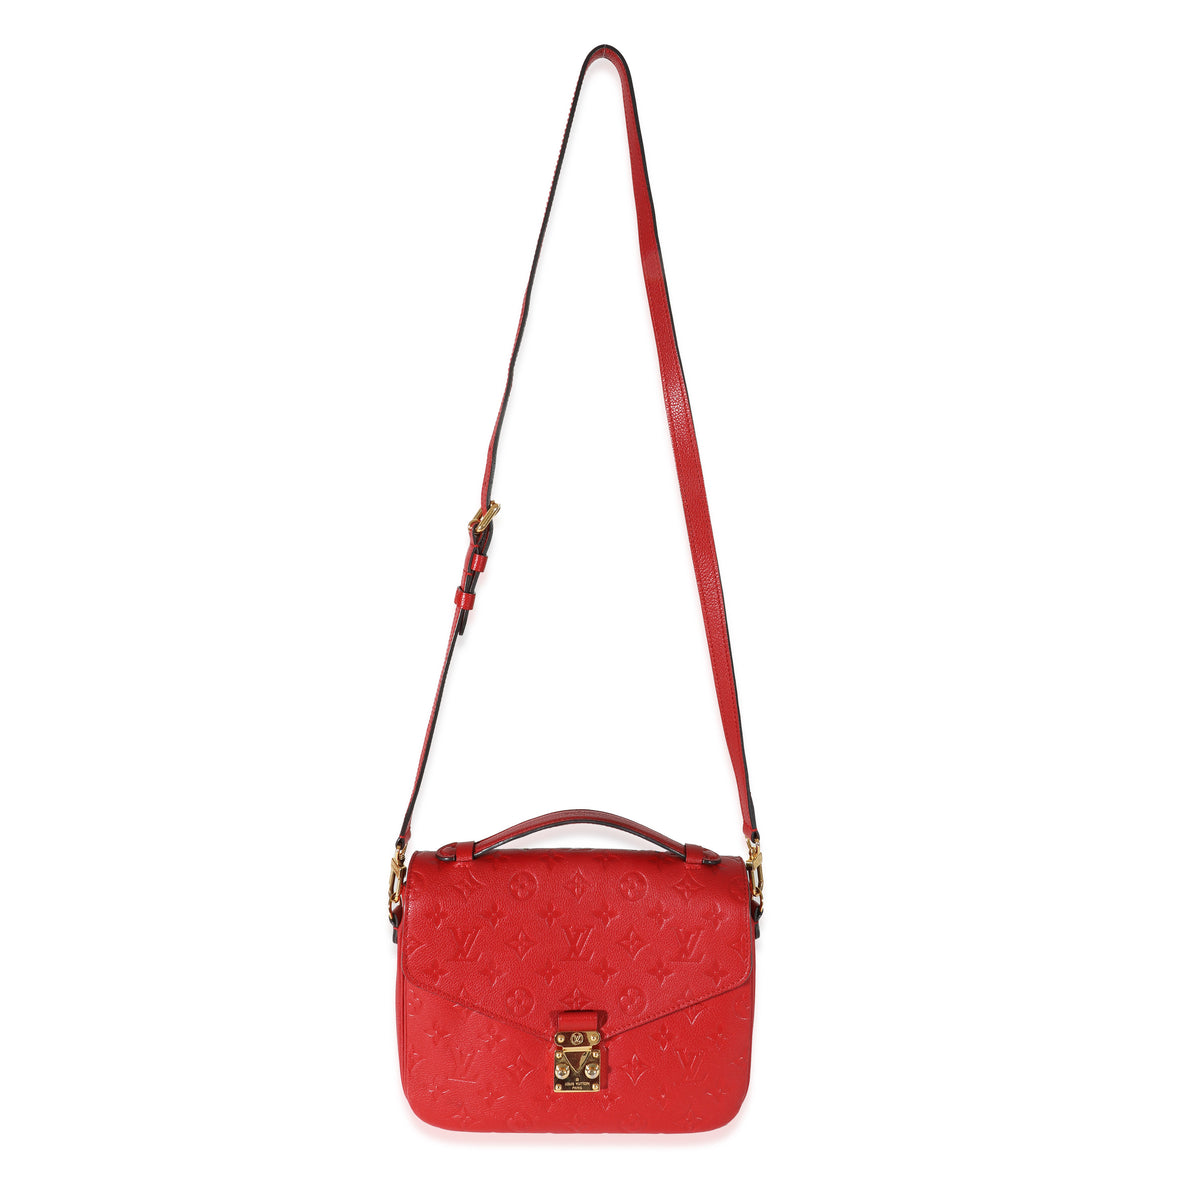 Louis Vuitton Pochette Metis Monogram Empreinte Scarlet in Leather